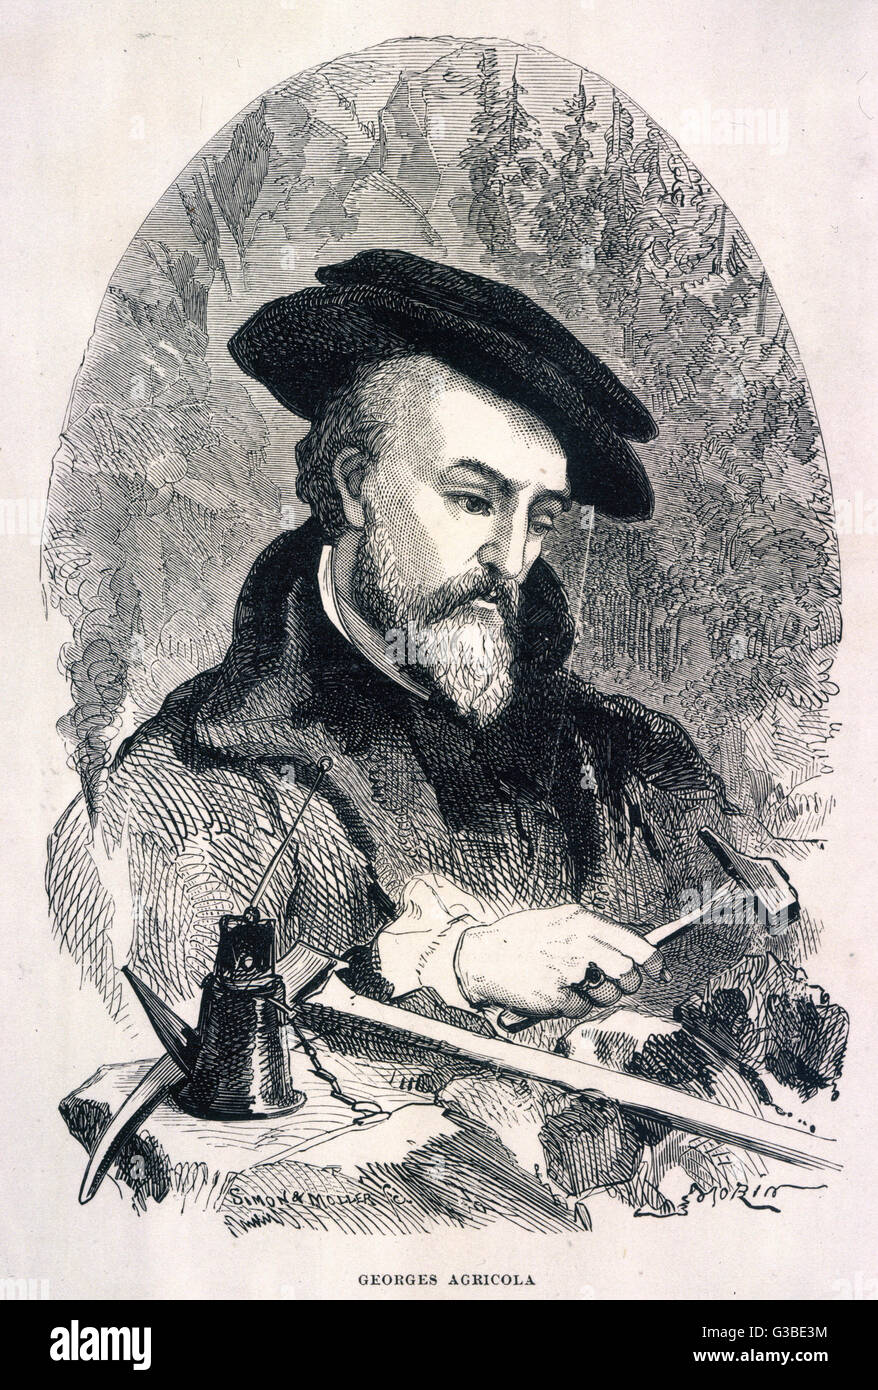 GEORG AGRICOLA BAUER considerato il padre della mineralogia, basando gli scritti di osservazione e di indagine piuttosto che ha ricevuto parere. Data: 1494 - 1555 Foto Stock